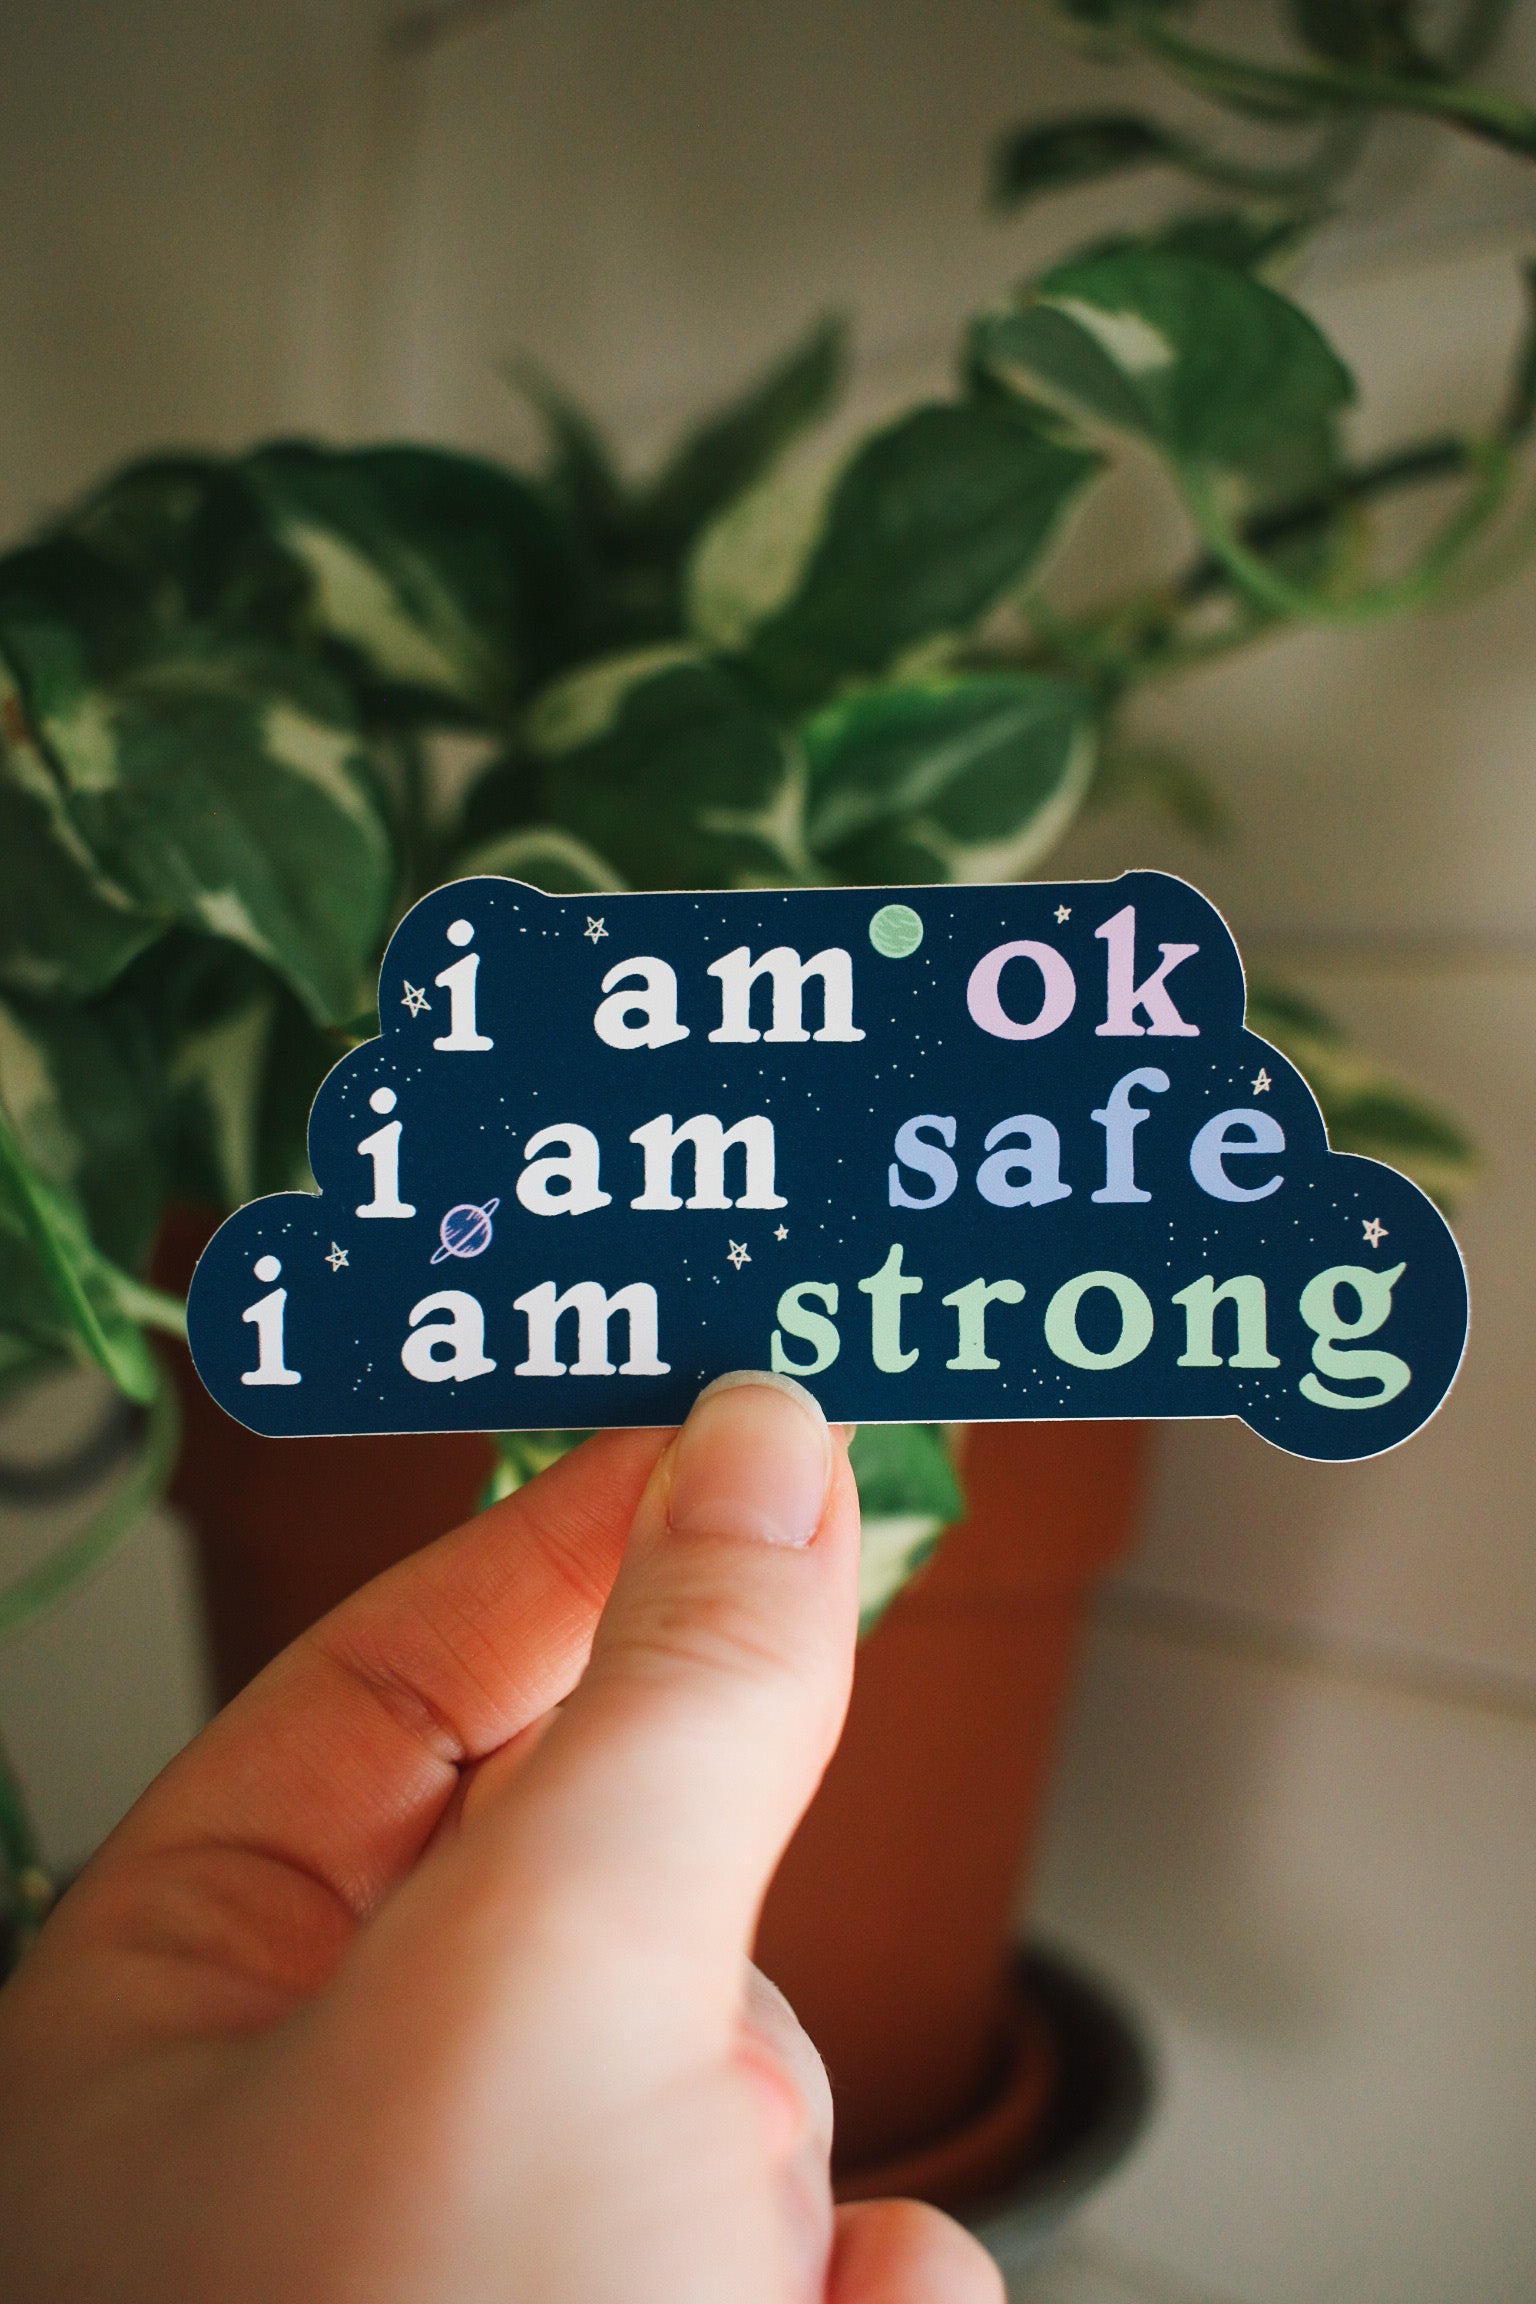 I am Ok. I am Safe. I am Strong - Mantra Sticker